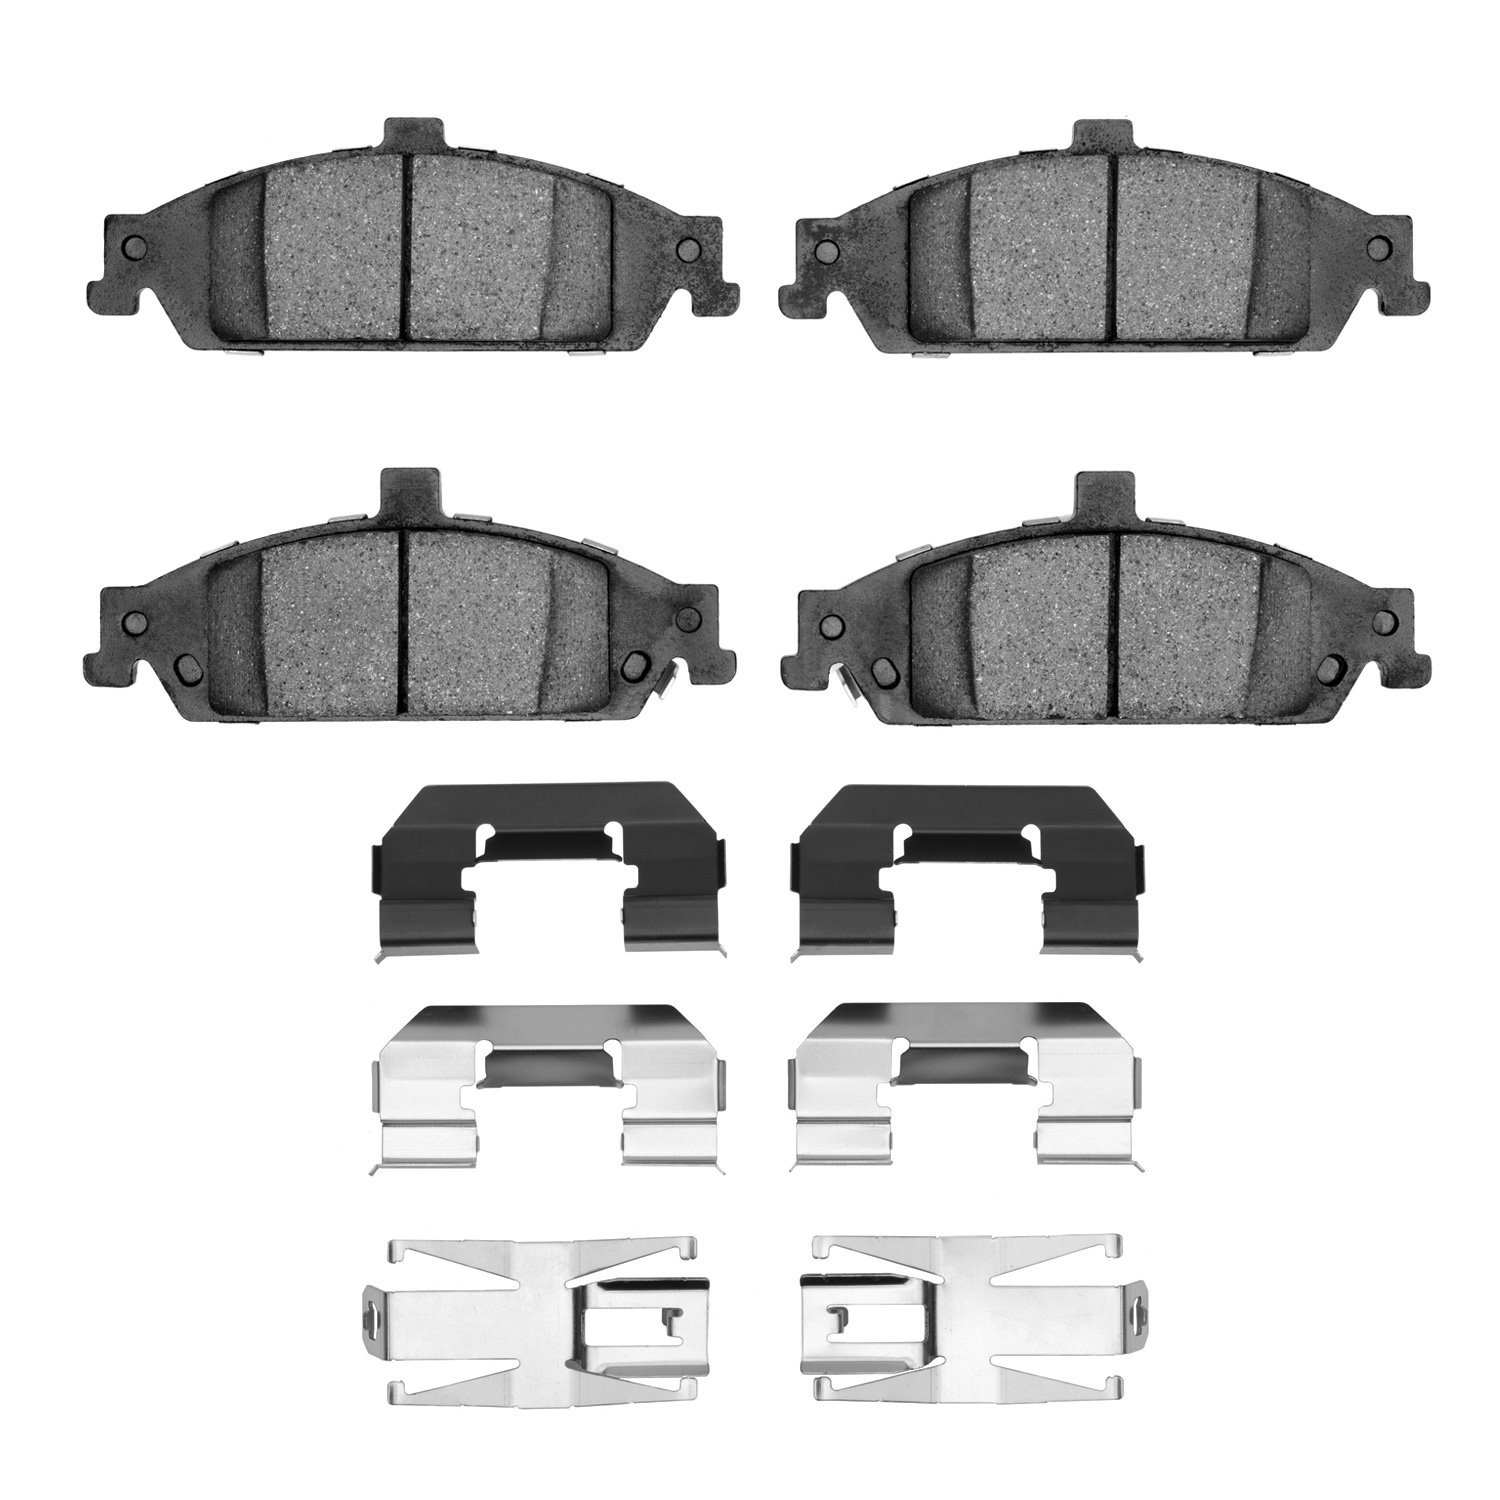 1310-0727-01 3000-Series Ceramic Brake Pads & Hardware Kit, 1997-2005 GM, Position: Front